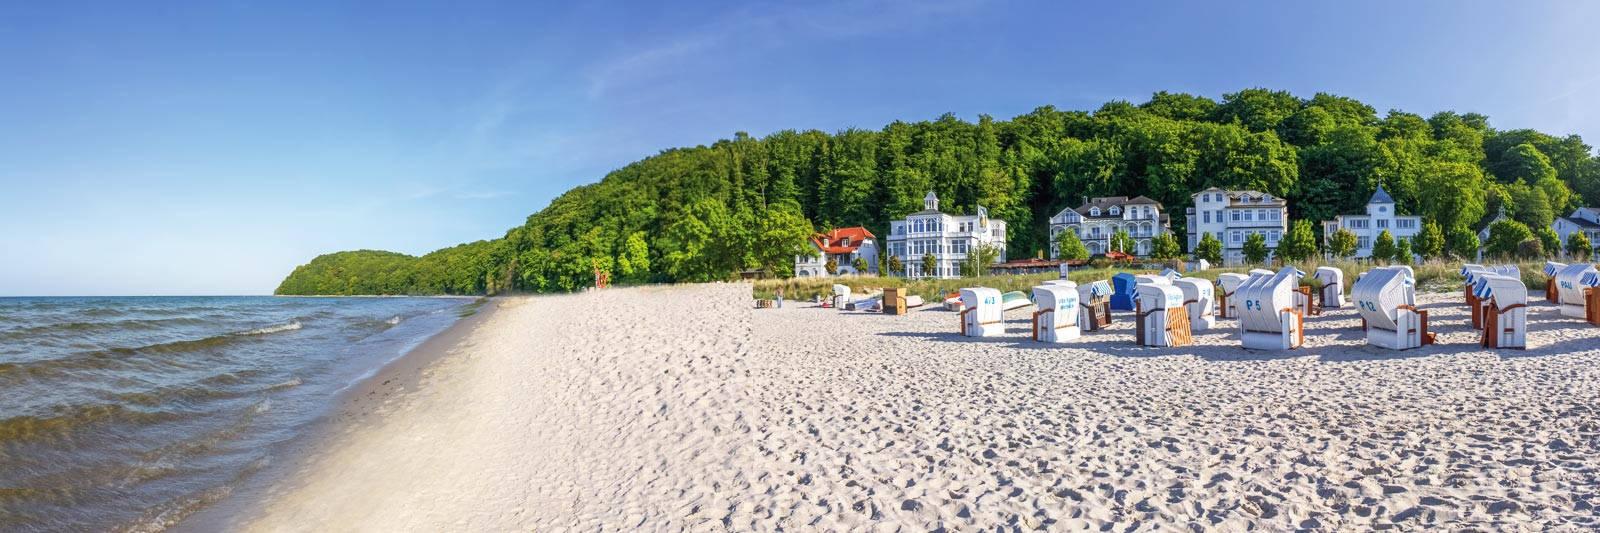 27 Ferienwohnungen und Ferienhäuser in Groß Raden - tourist-online.de